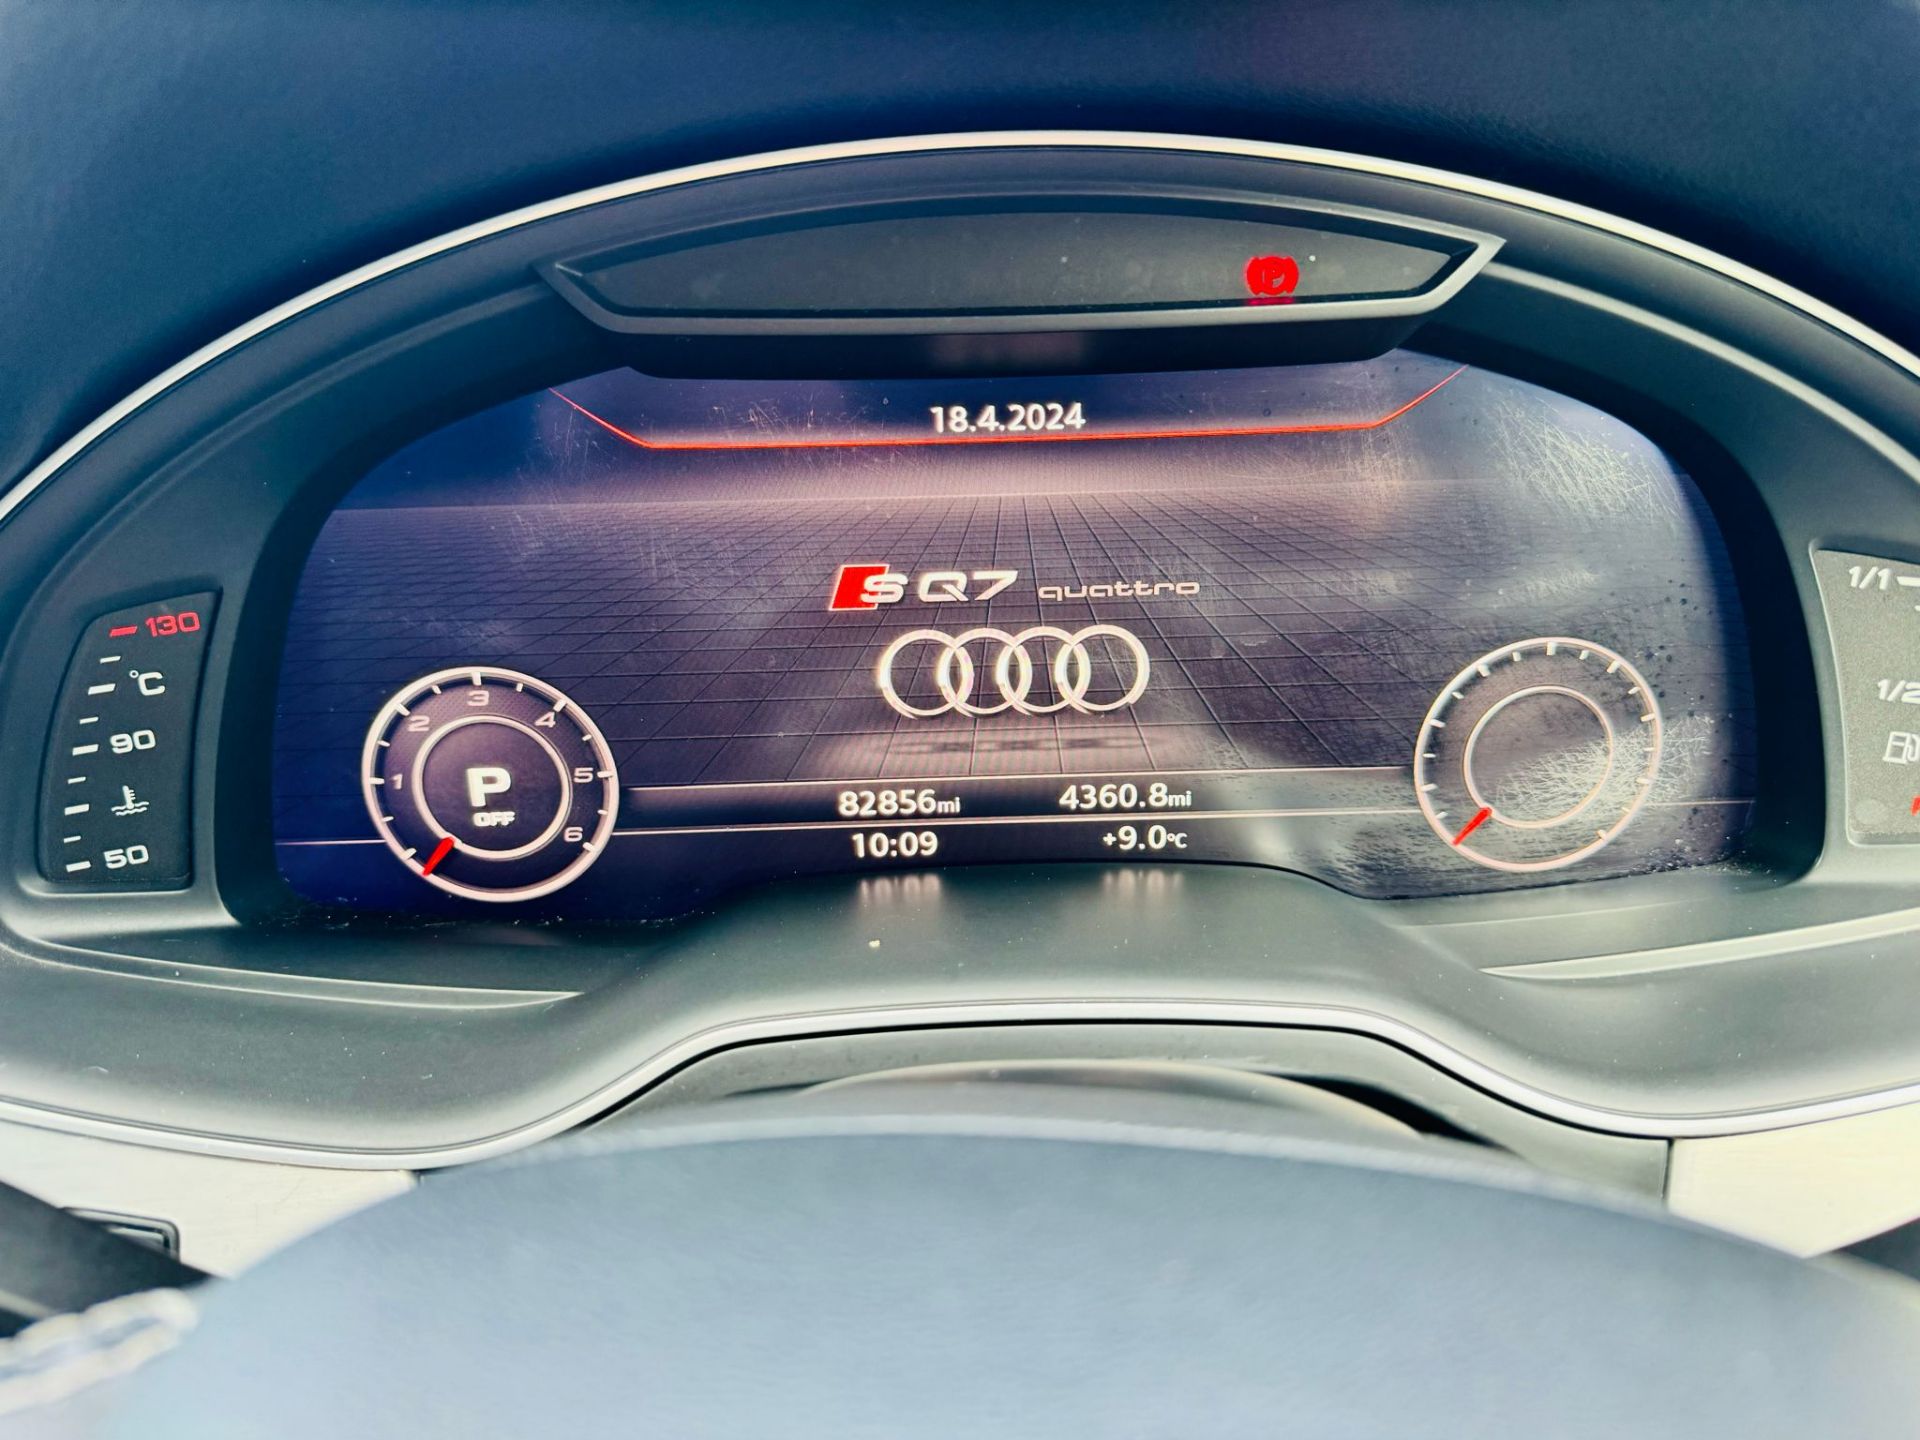 Audi SQ7 4.0TDI V8 Quattro 430BHP "SQ7 EDITION" Auto (7 Seats) 2018 18Reg -Sat Nav -Reversing camera - Image 25 of 37